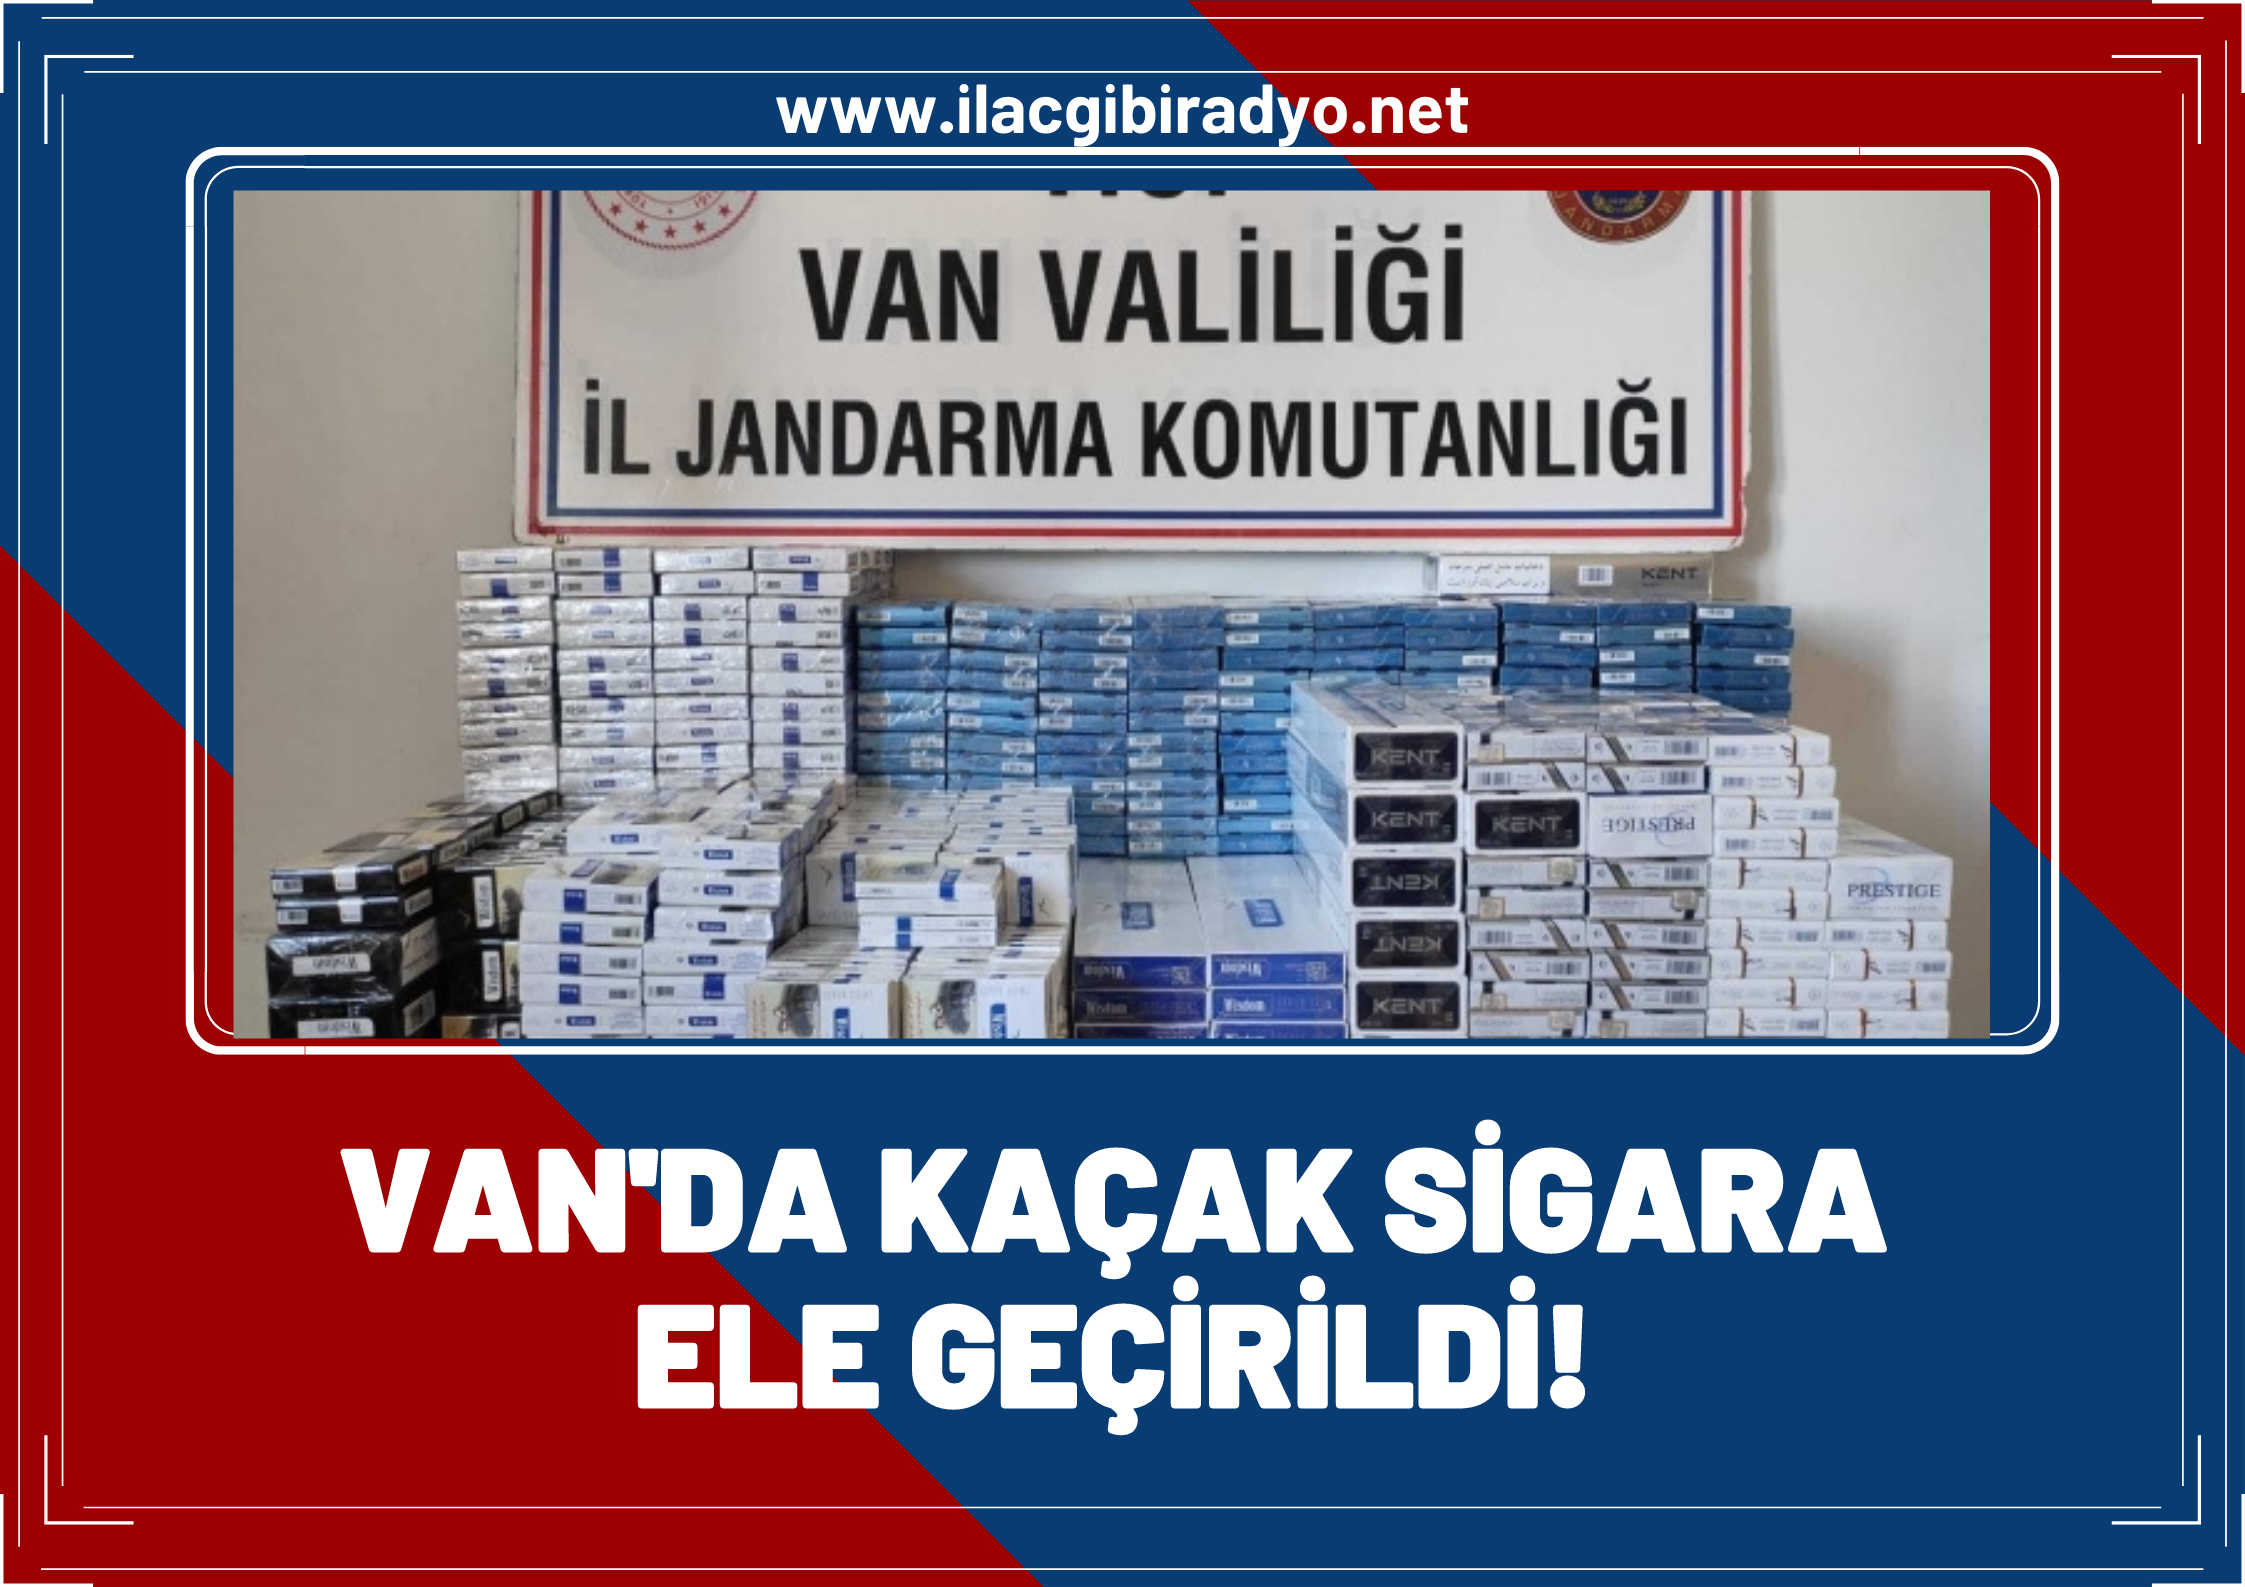 Van'da kaçakçılığa geçit yok: Jandarma binlerce paket kaçak sigara ele geçirildi!